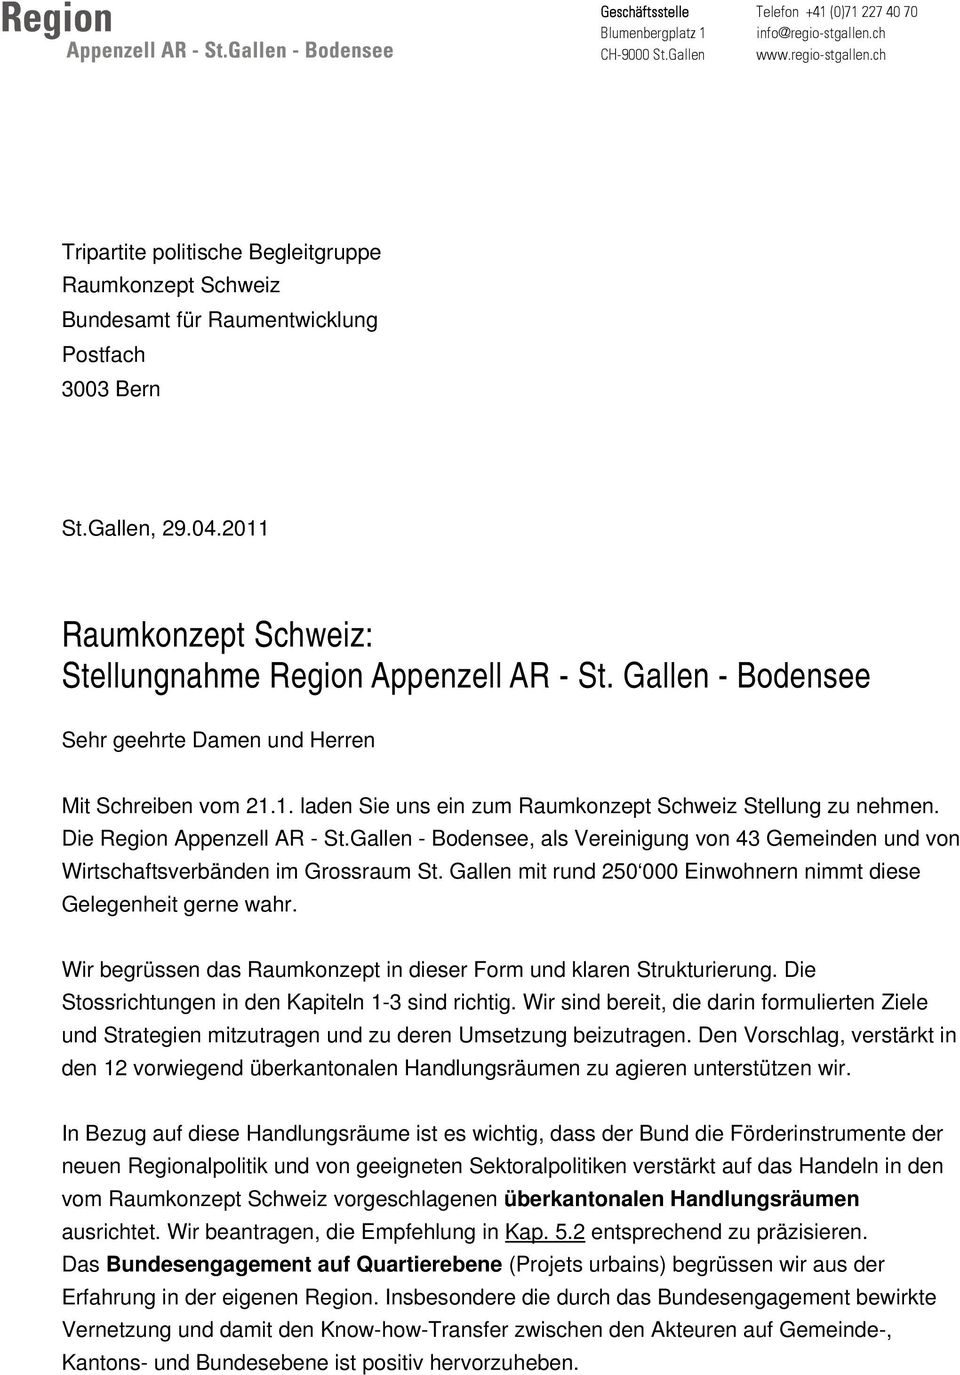 Die Region Appenzell AR - St.Gallen - Bodensee, als Vereinigung von 43 Gemeinden und von Wirtschaftsverbänden im Grossraum St. Gallen mit rund 250 000 Einwohnern nimmt diese Gelegenheit gerne wahr.